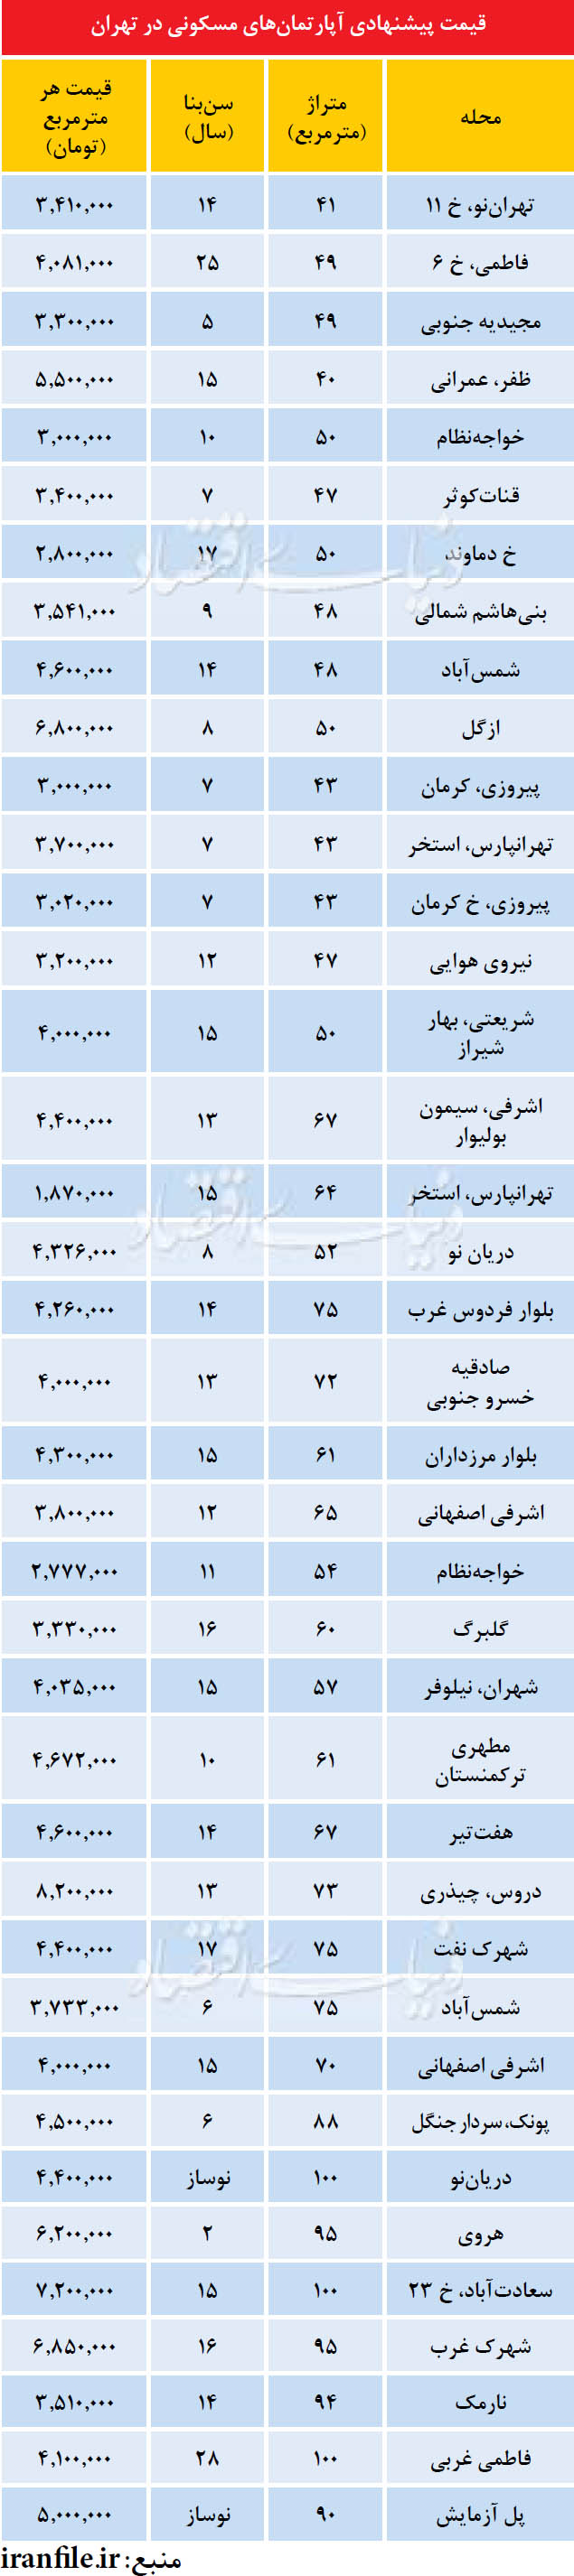 قیمت آپارتمان در نقاط مختلف تهران (جدول)